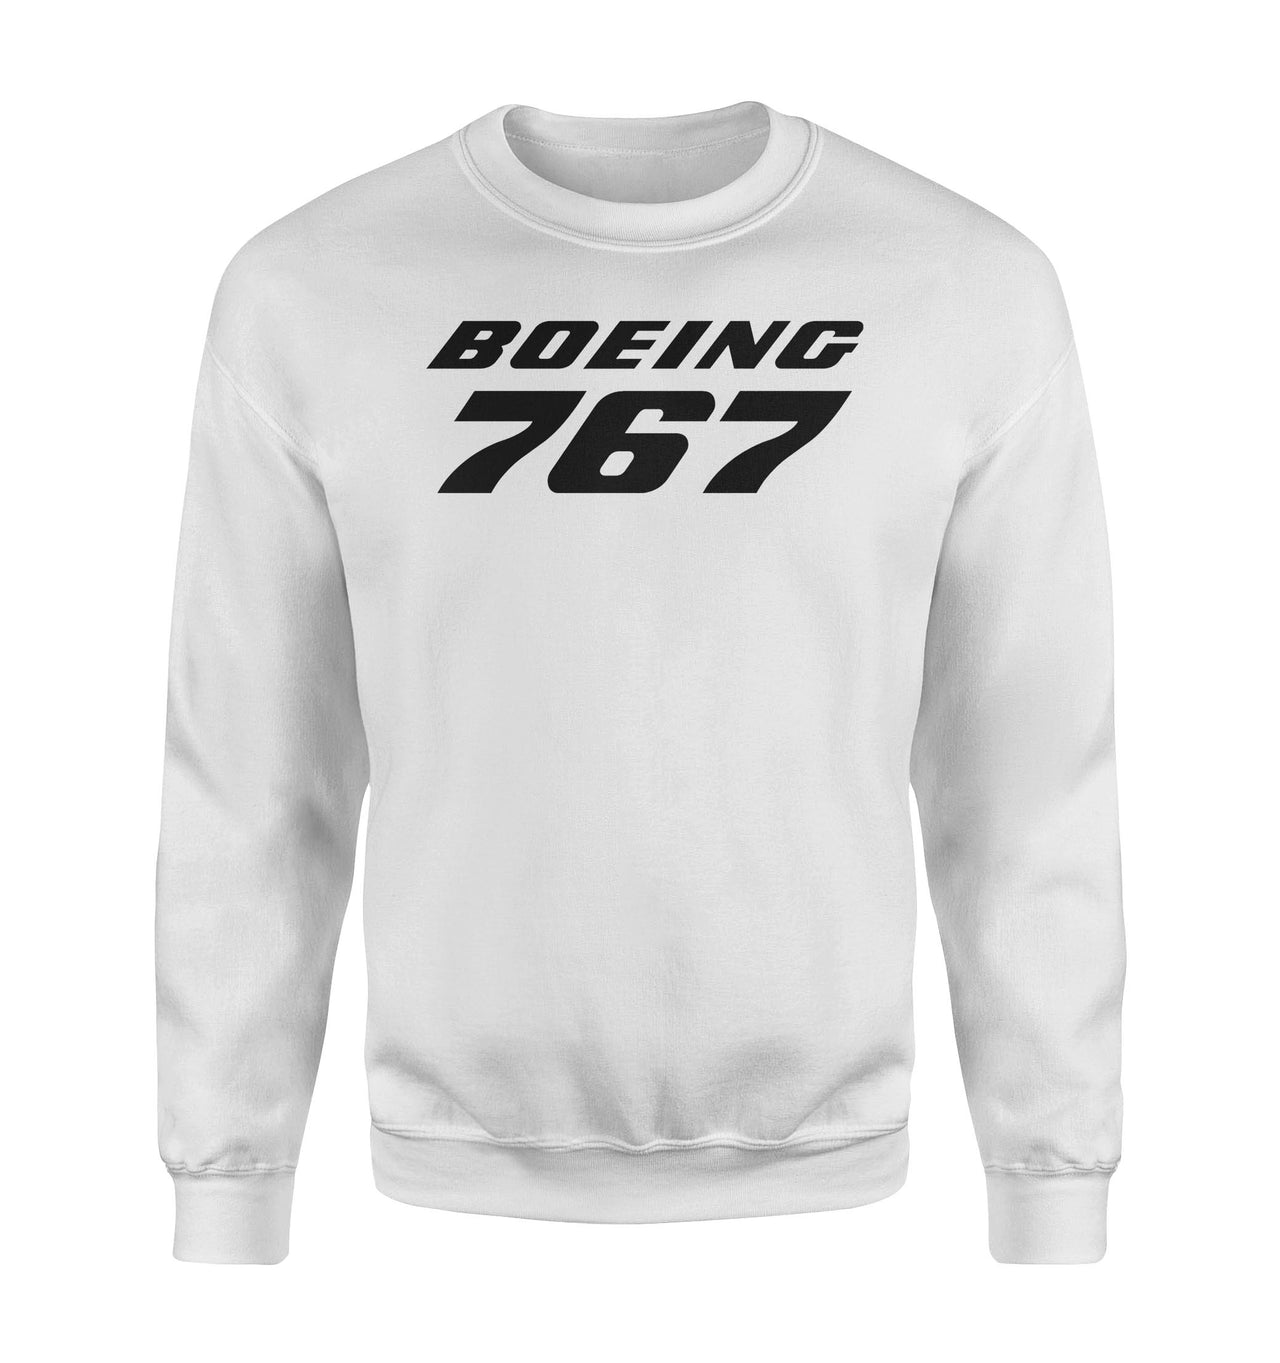 Boeing 767 & Text Designed Sweatshirts